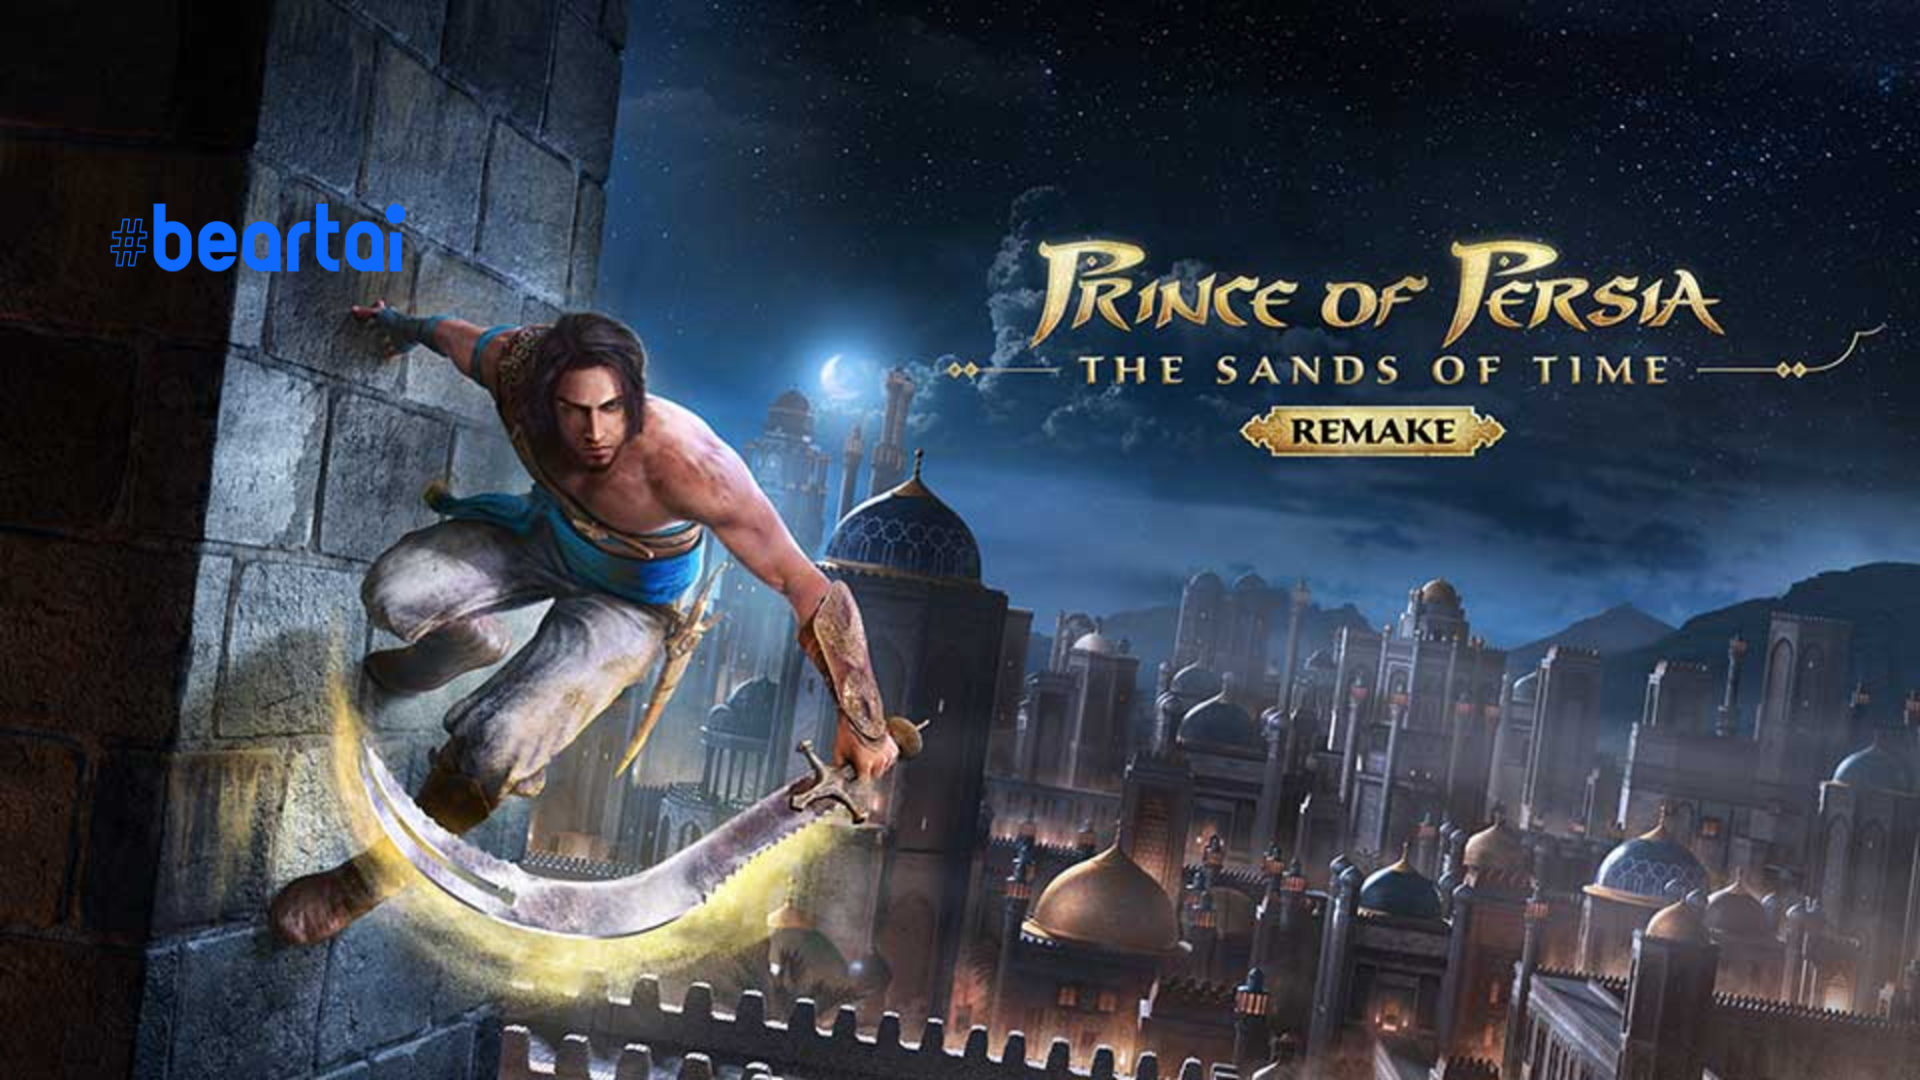 Ubisoft ประกาศขอเลื่อนวางจำหน่าย Prince of Persia: The Sands of Time Remake ออกไปช่วงเดือนมีนาคม 2021 แทน